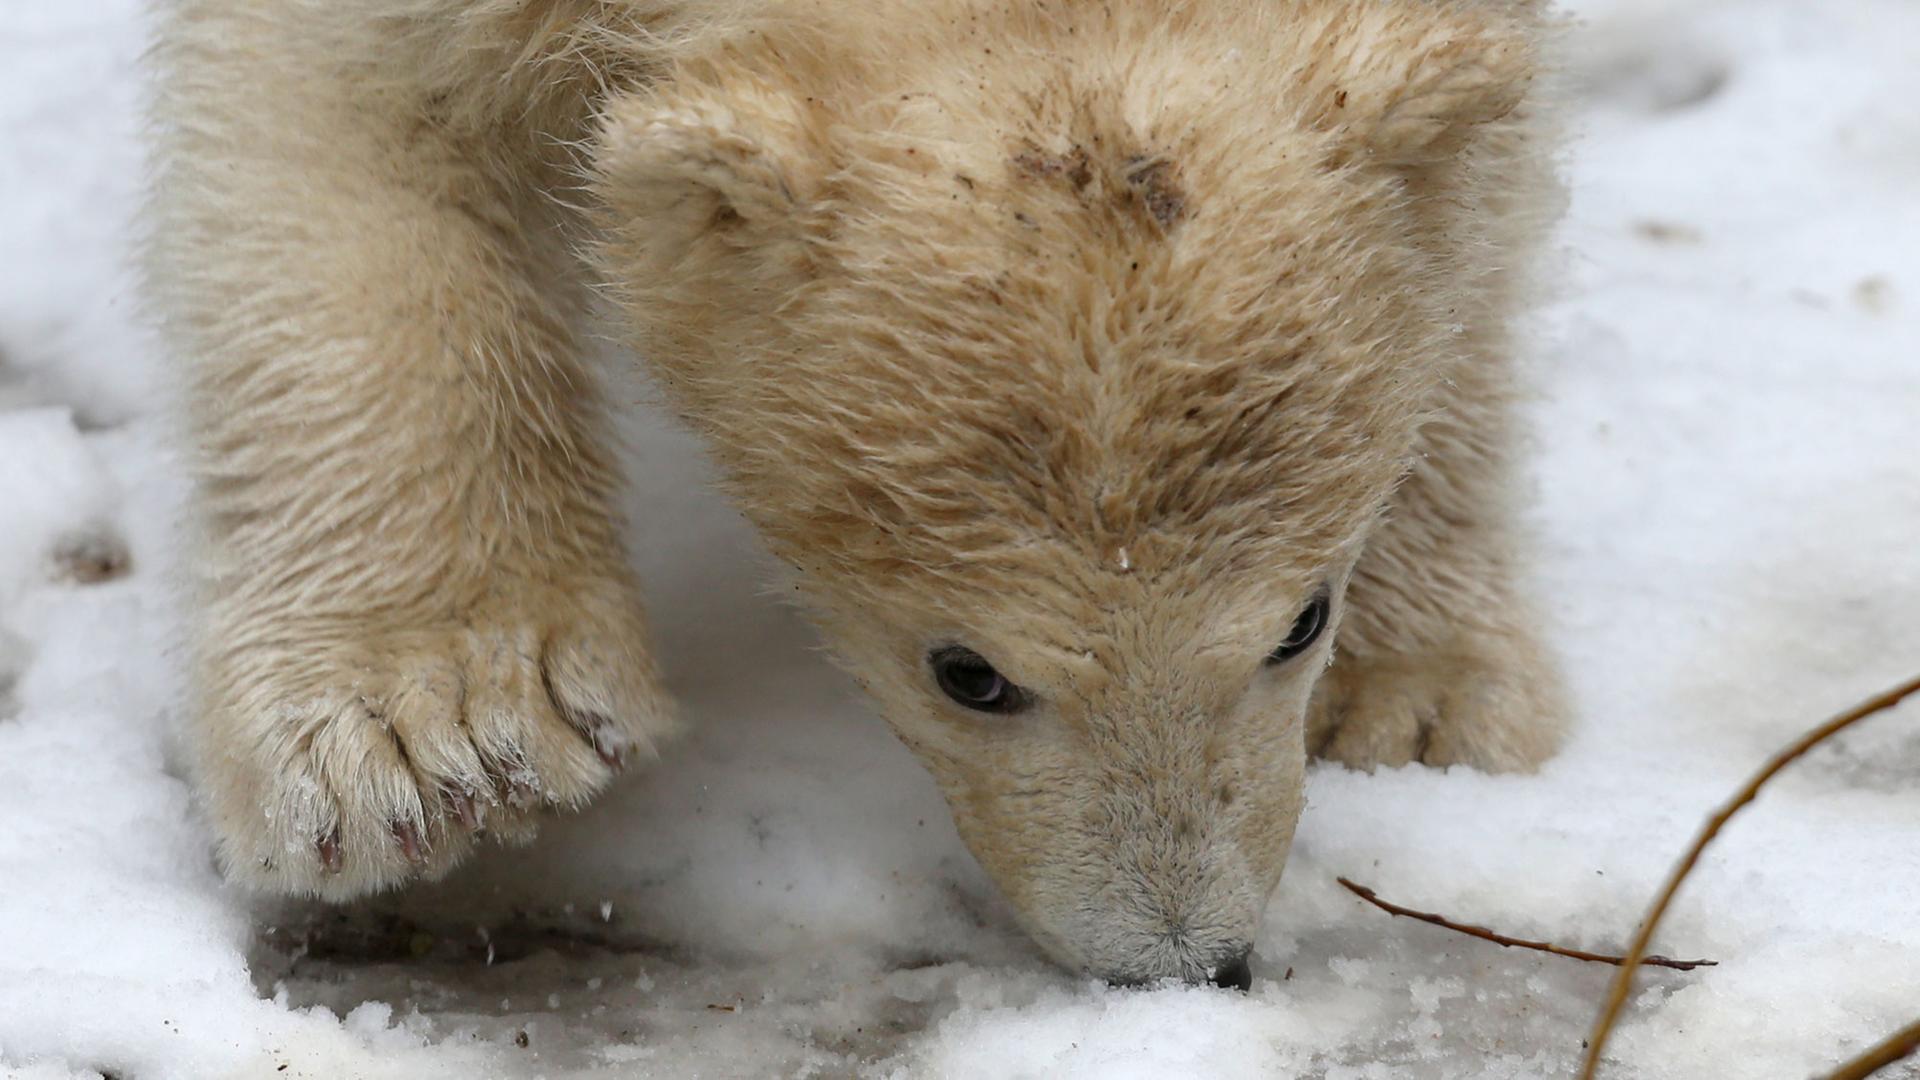 Bei seiner feierlichen Taufe auf den Namen "Fiete" lernt der im Dezember 2014 geborene Eisbären-Junge am 31.03.2015 im Zoo in Rostock (Mecklenburg-Vorpommern) zum ersten Mal Schnee kennen. Für die Namensuche waren beim Zoo rund 3.000 Briefe, Mails und Anrufe eingegangen.